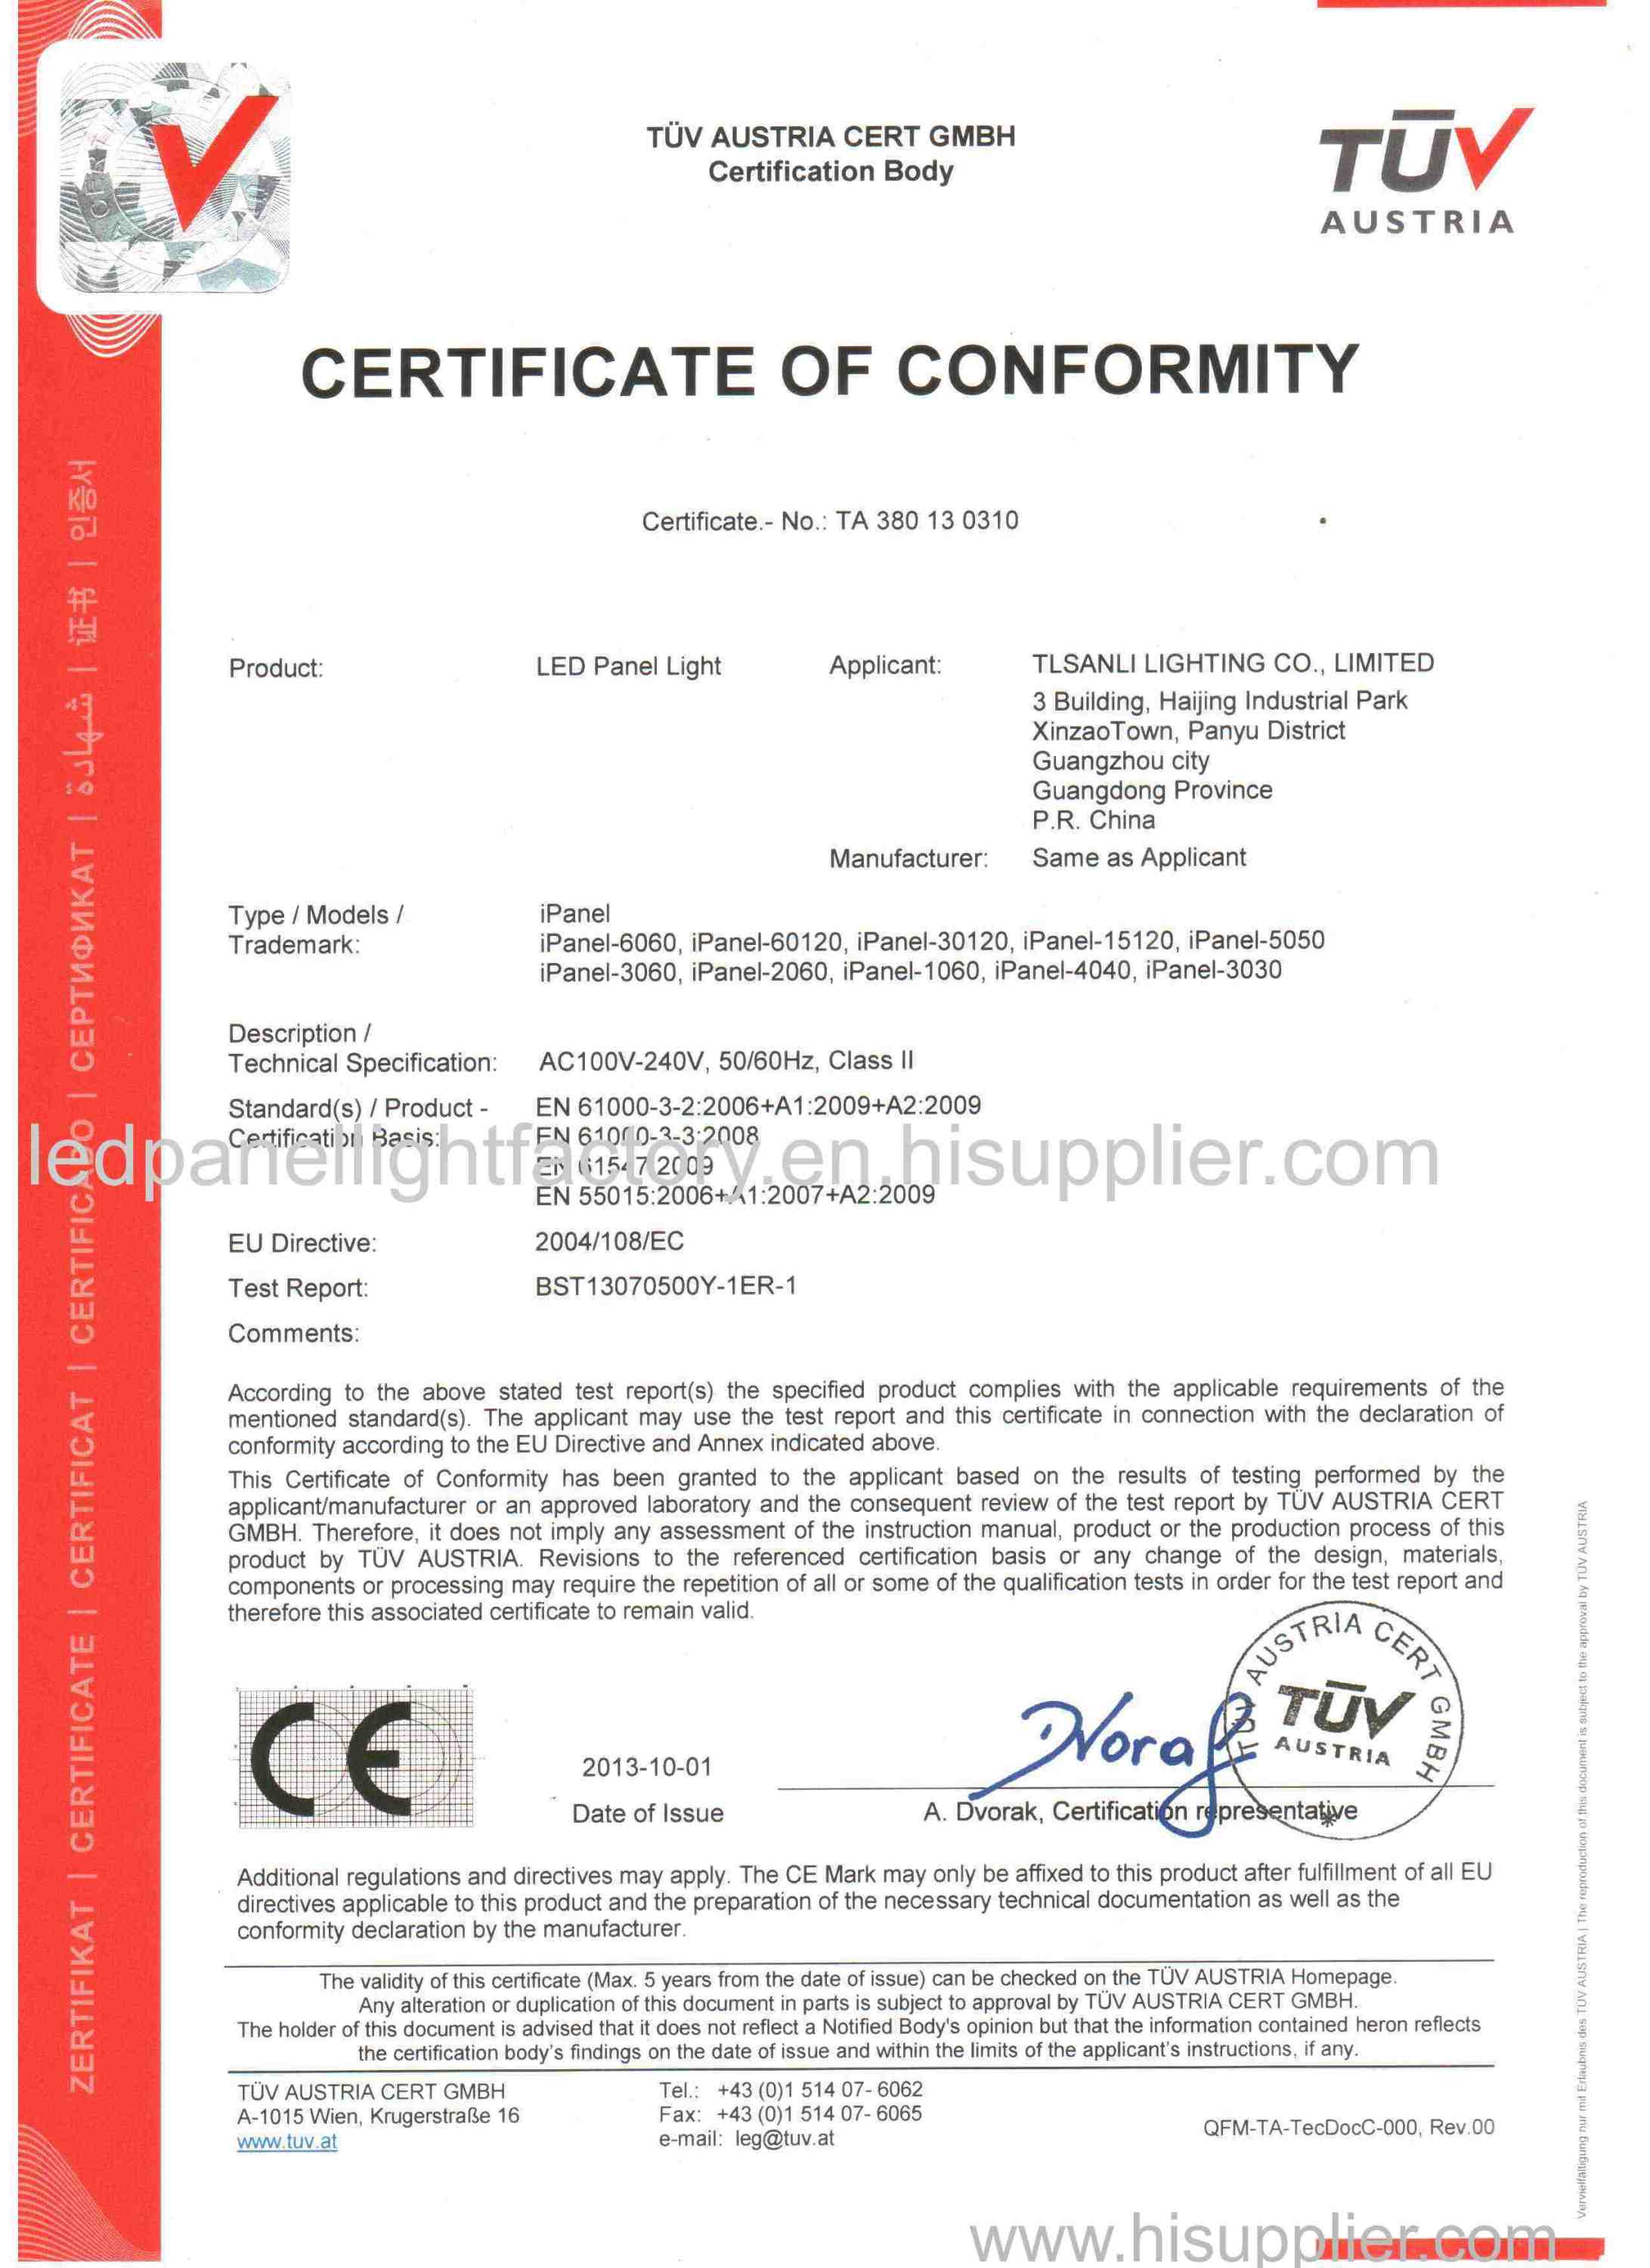 TUV certification for Led Panel Light